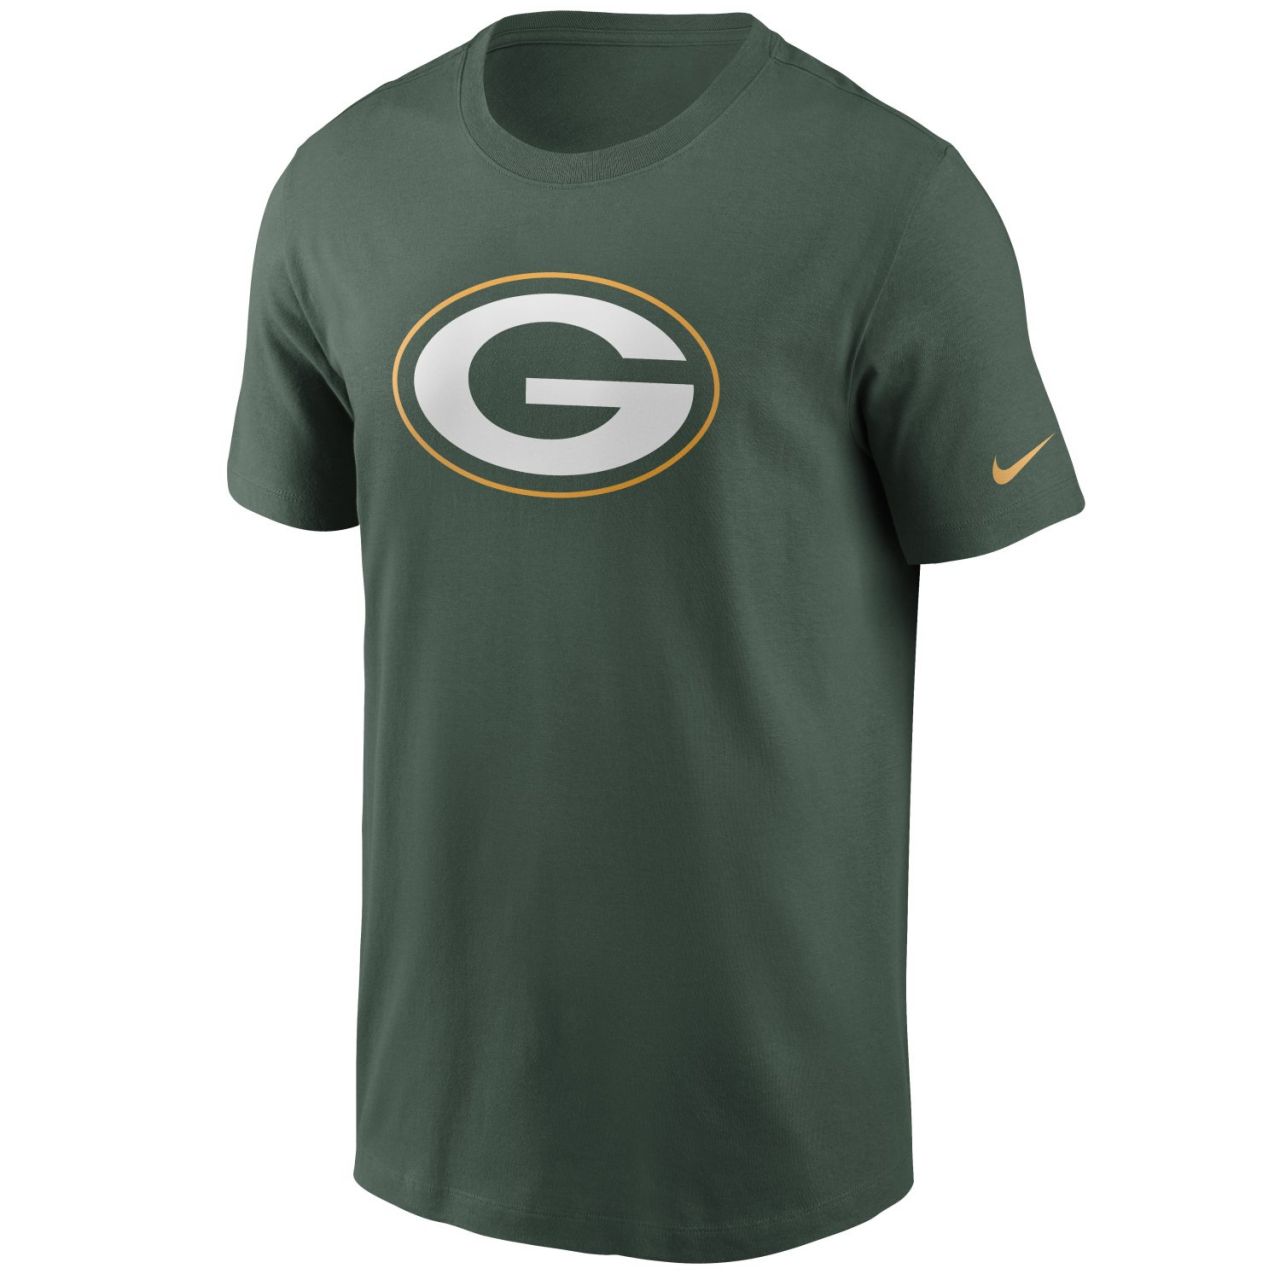 amfoo - Nike NFL Essential Shirt - Green Bay Packers